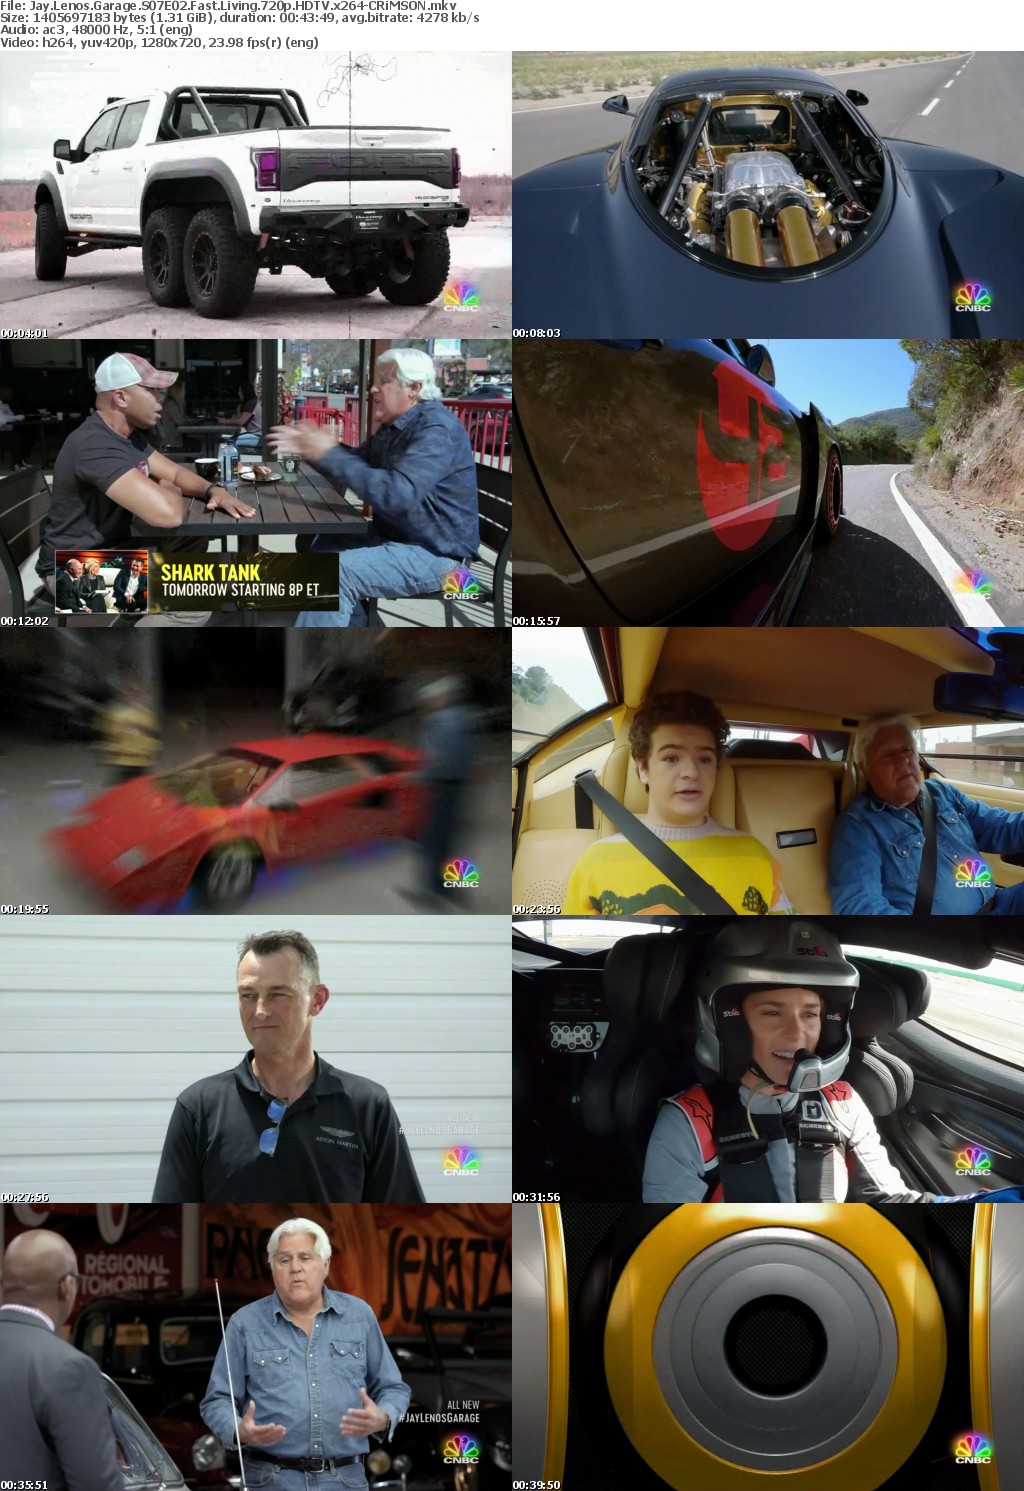 Jay Lenos Garage S07E02 Fast Living 720p HDTV x264-CRiMSON